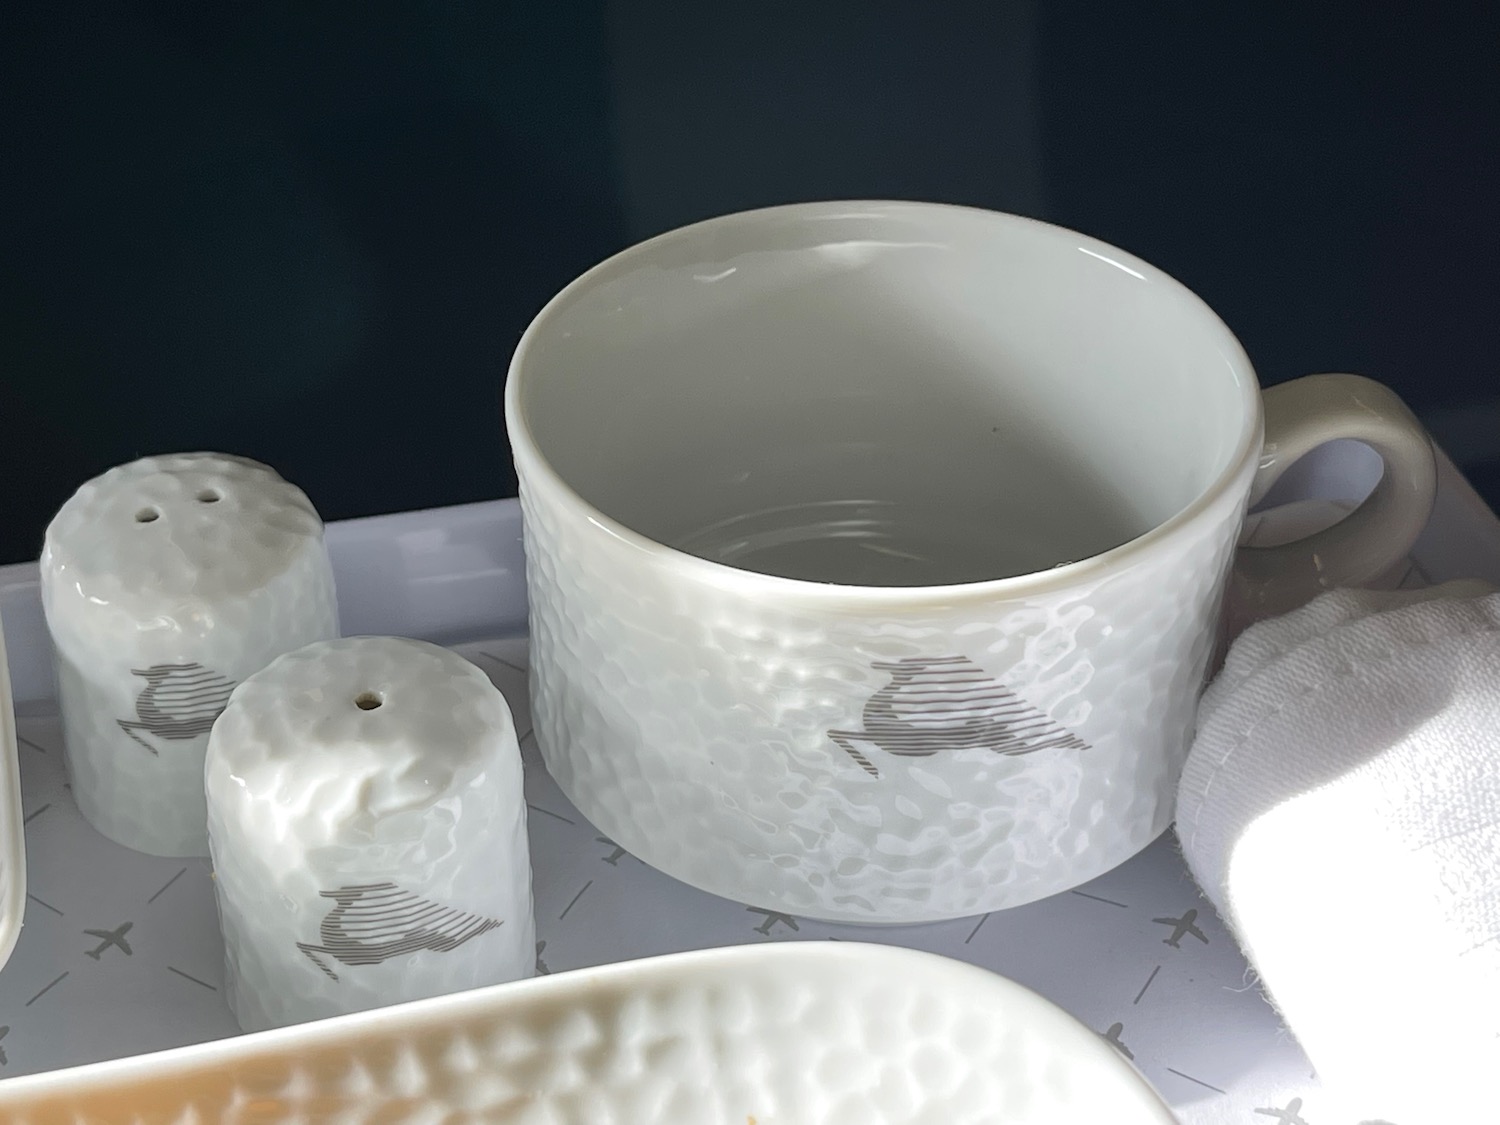 a white mug and salt shakers on a tray